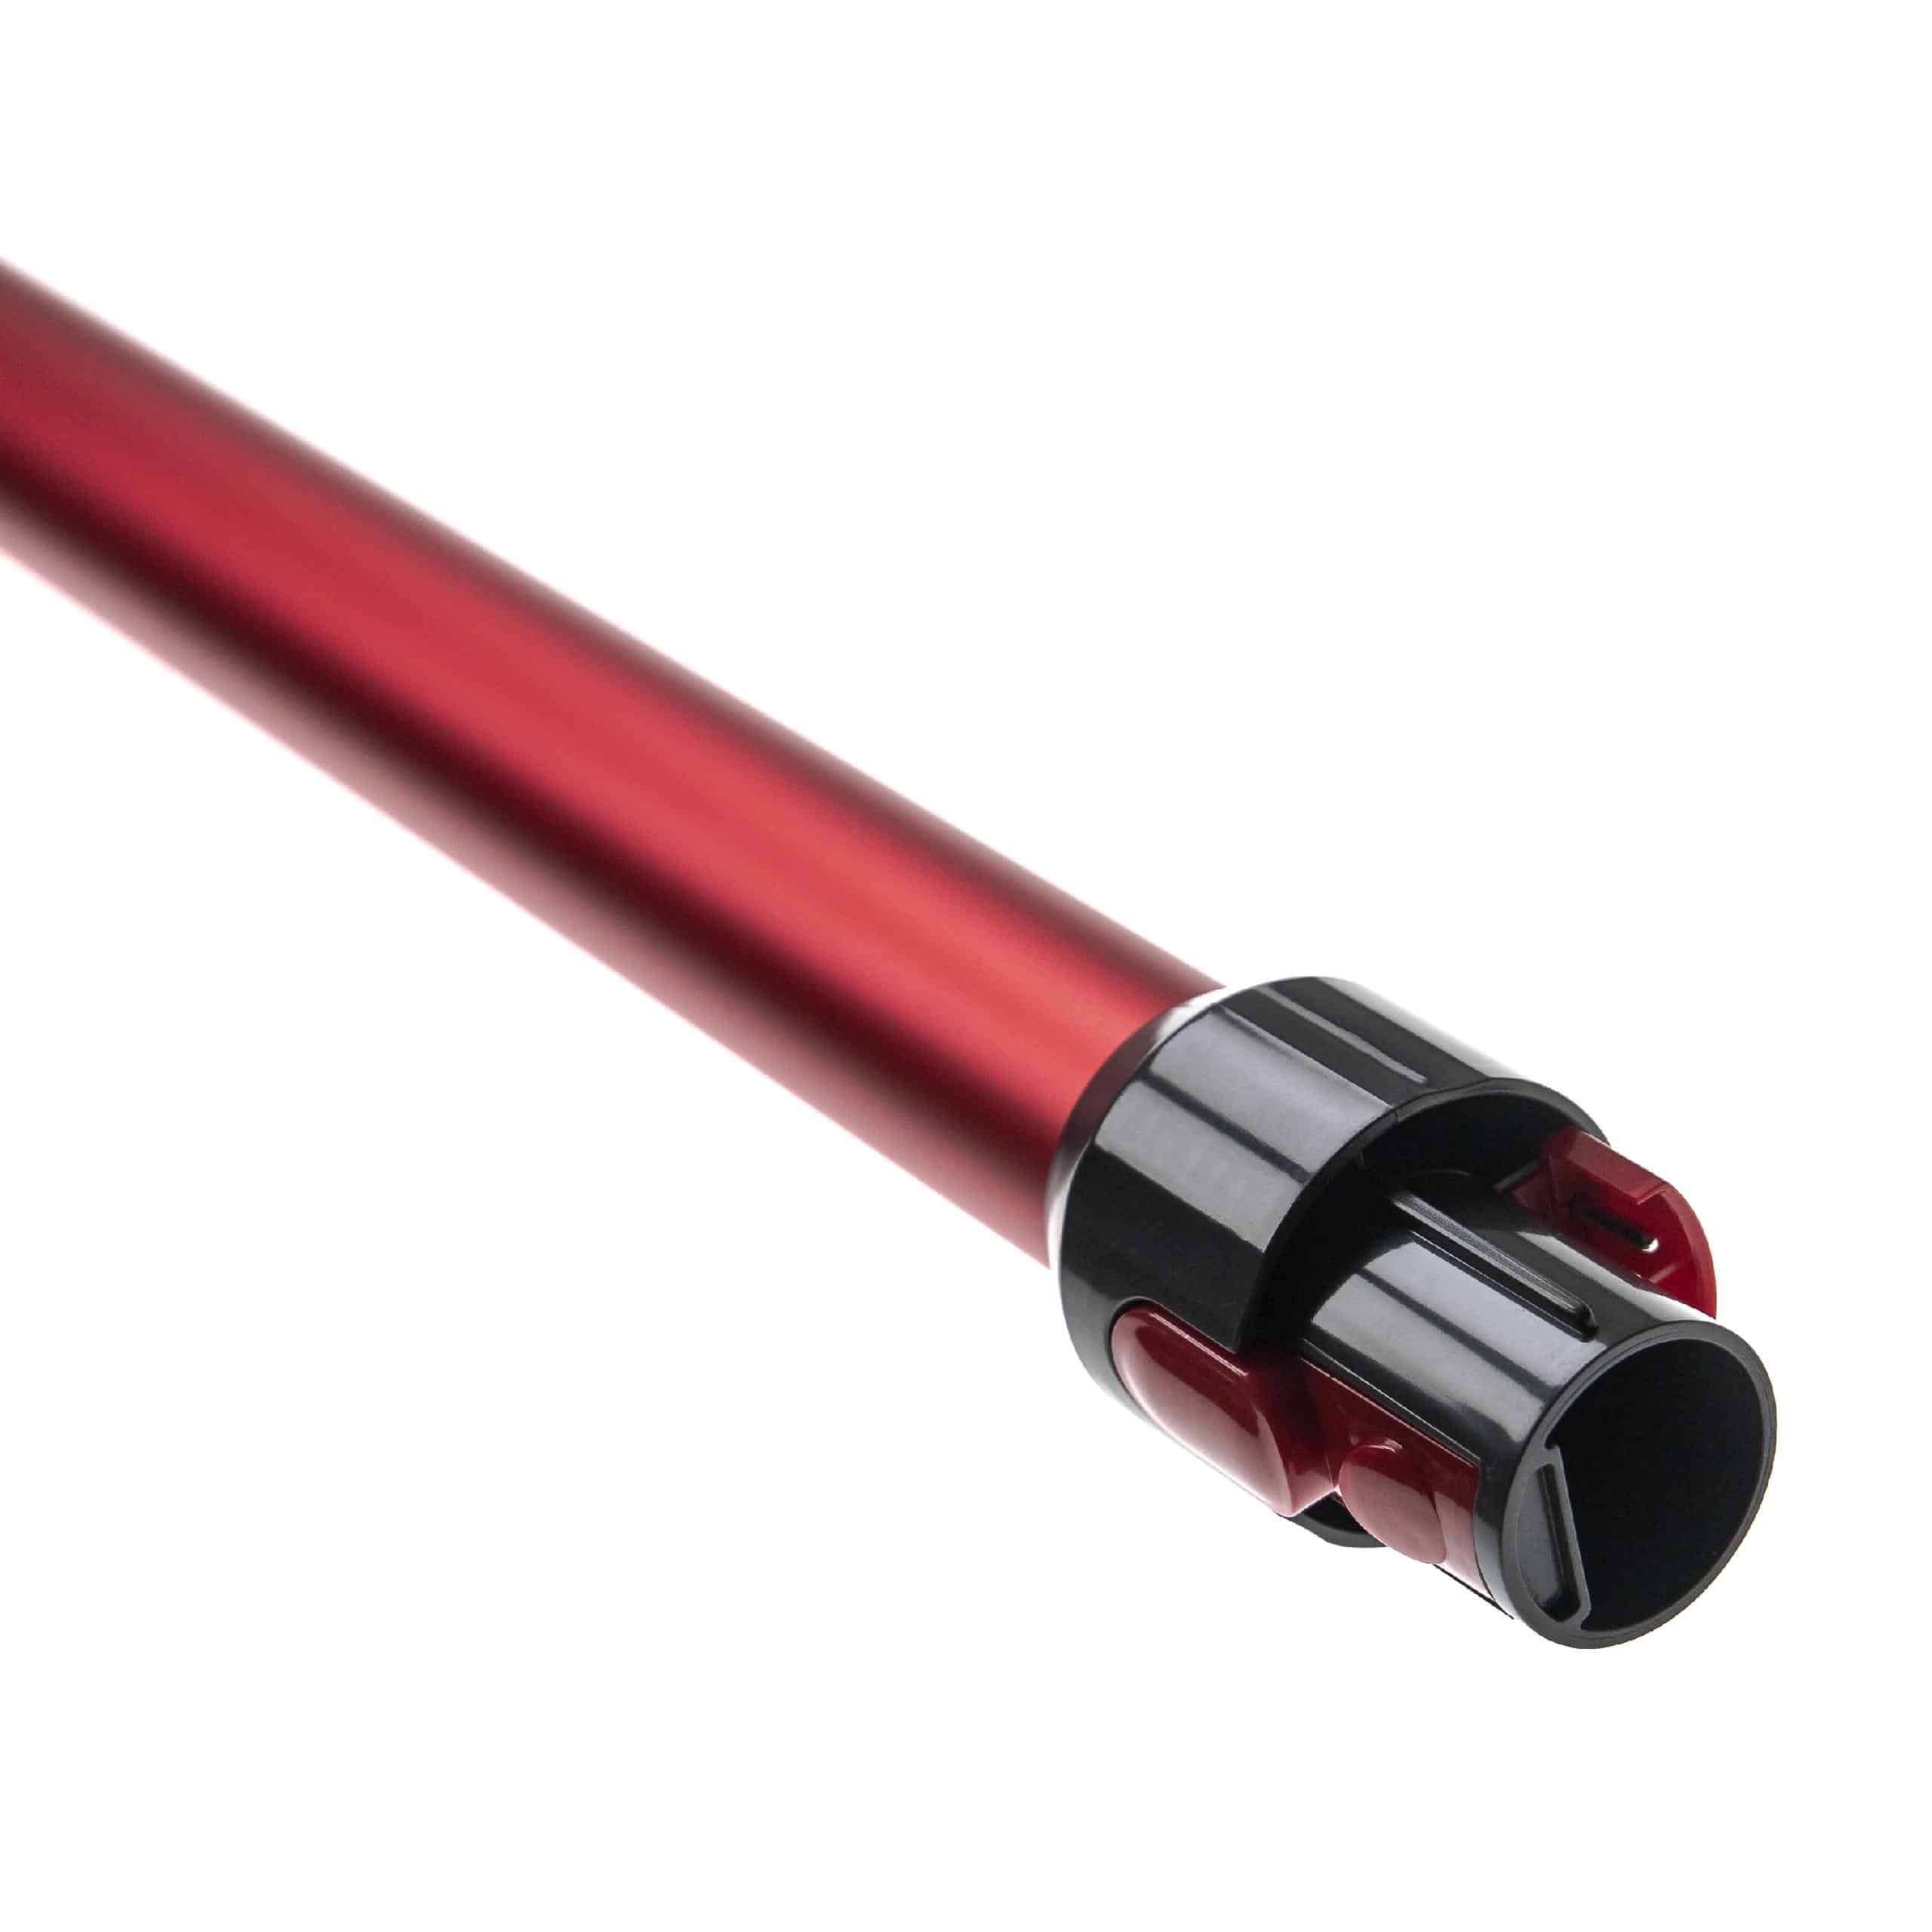 Tube for Dyson V10, V11, V15, V7, V8 vacuum cleaner - Length: 74, red